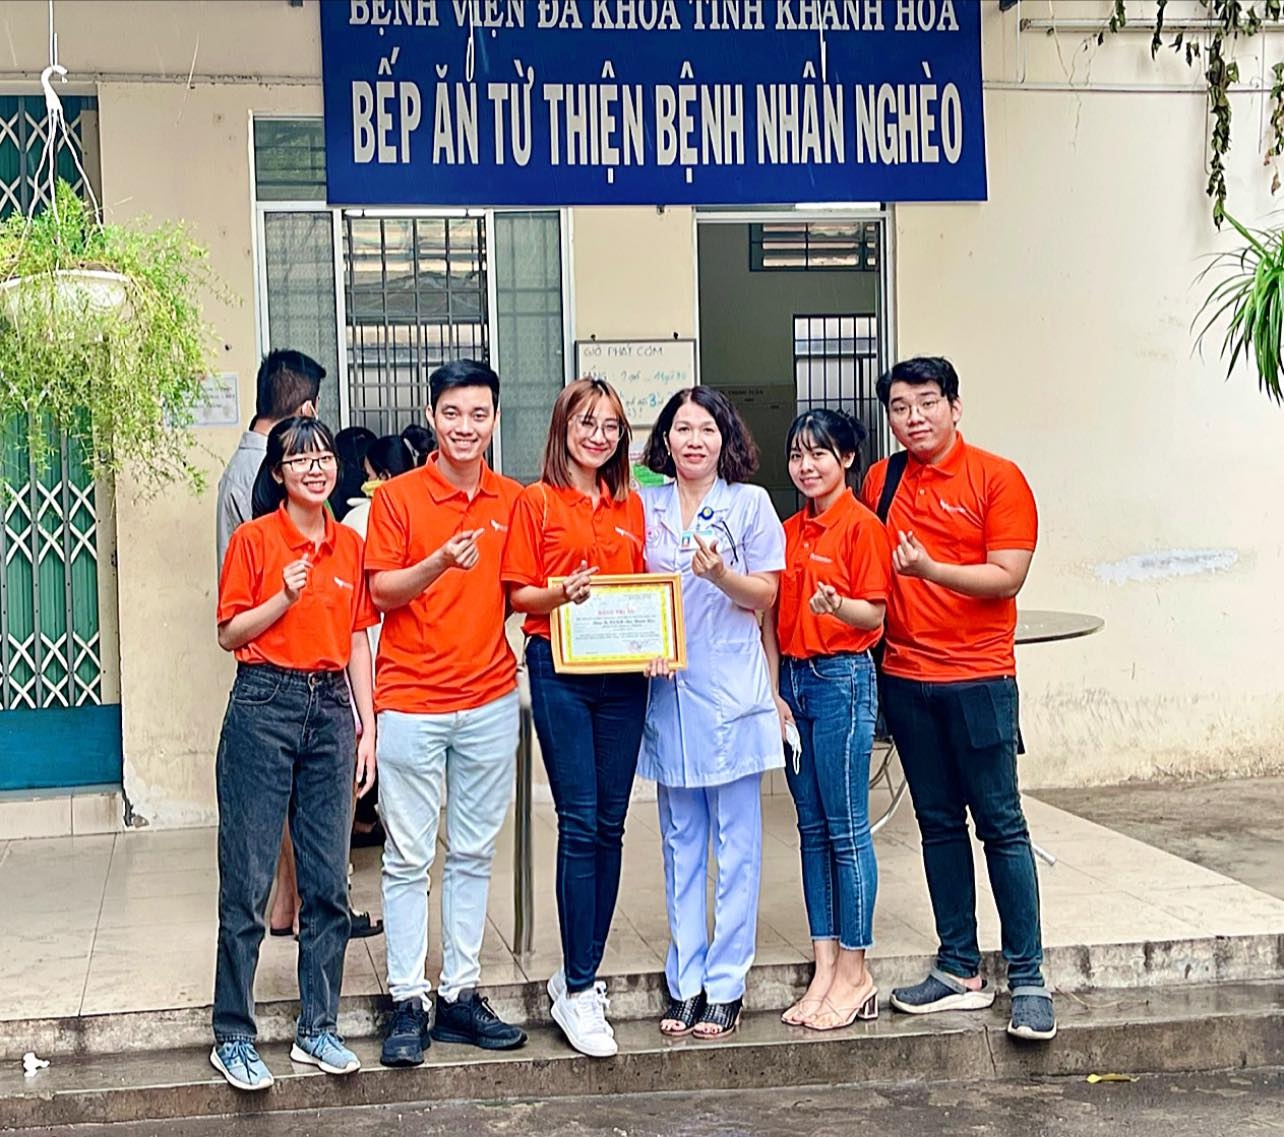 Vietwings - Yến Sào Khánh Hòa trao quà cho Hội Người mù Nha Trang